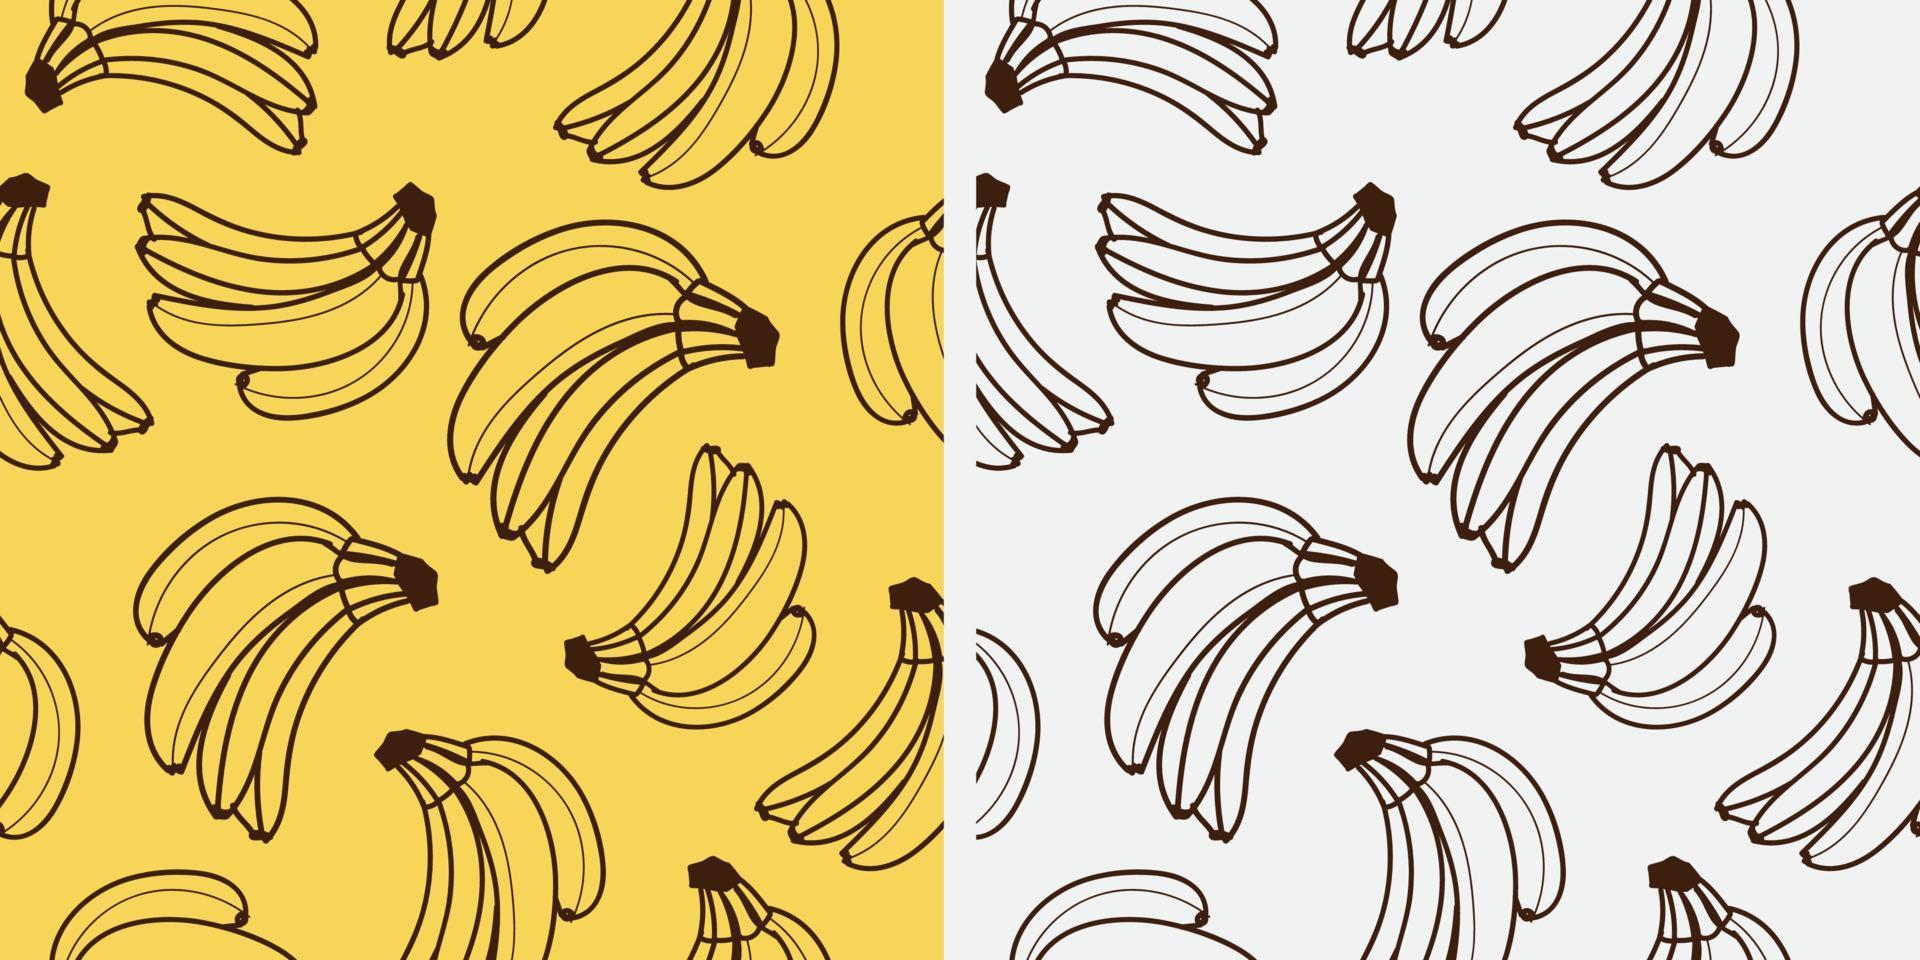 disegno del modello di banana. illustrazione vettoriale